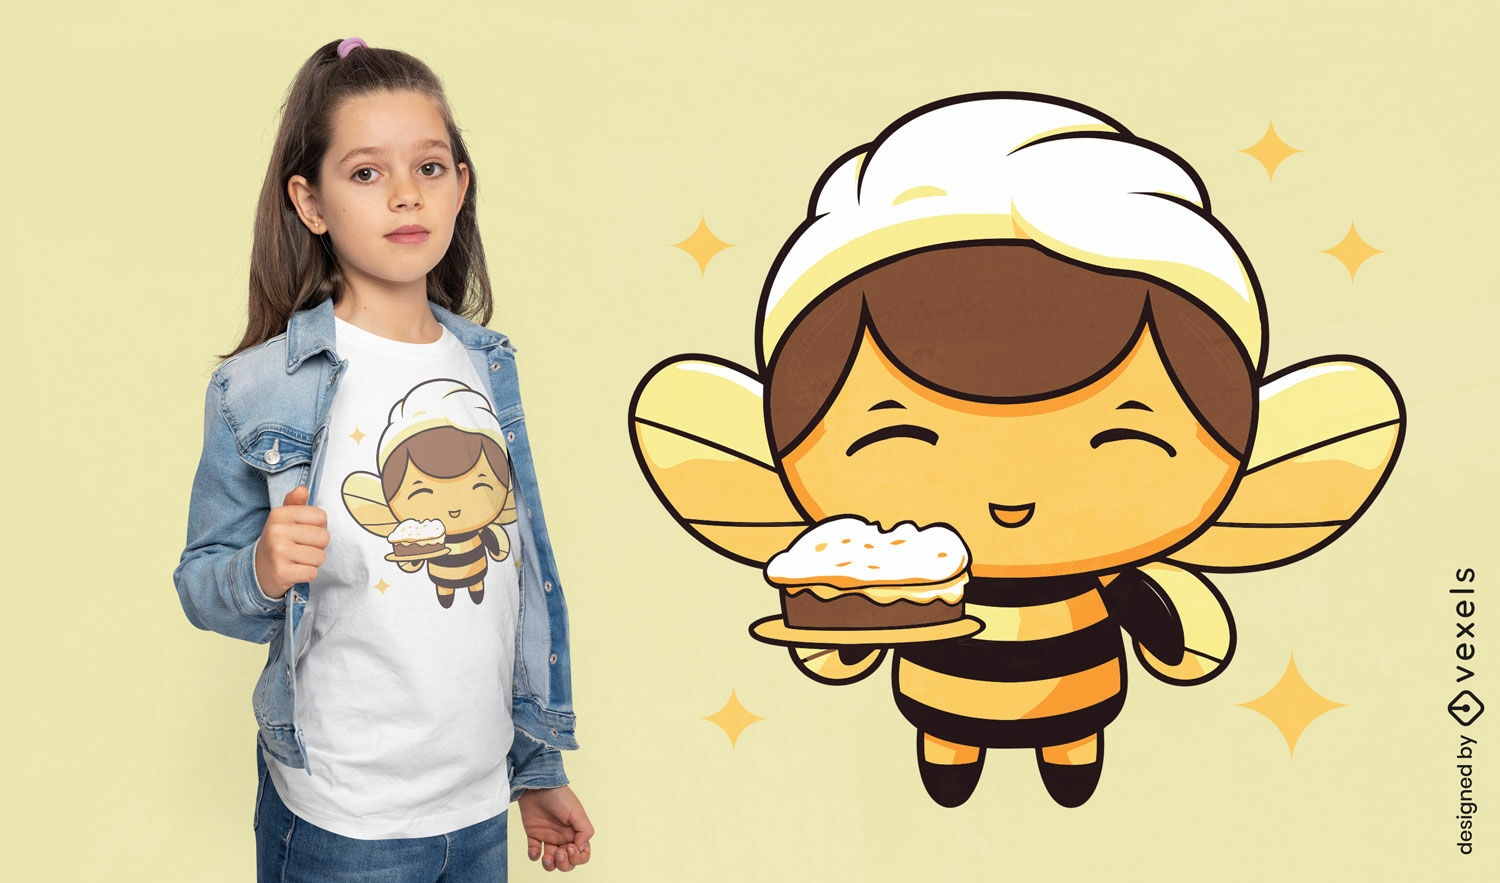  Baker bee character t-shirt design